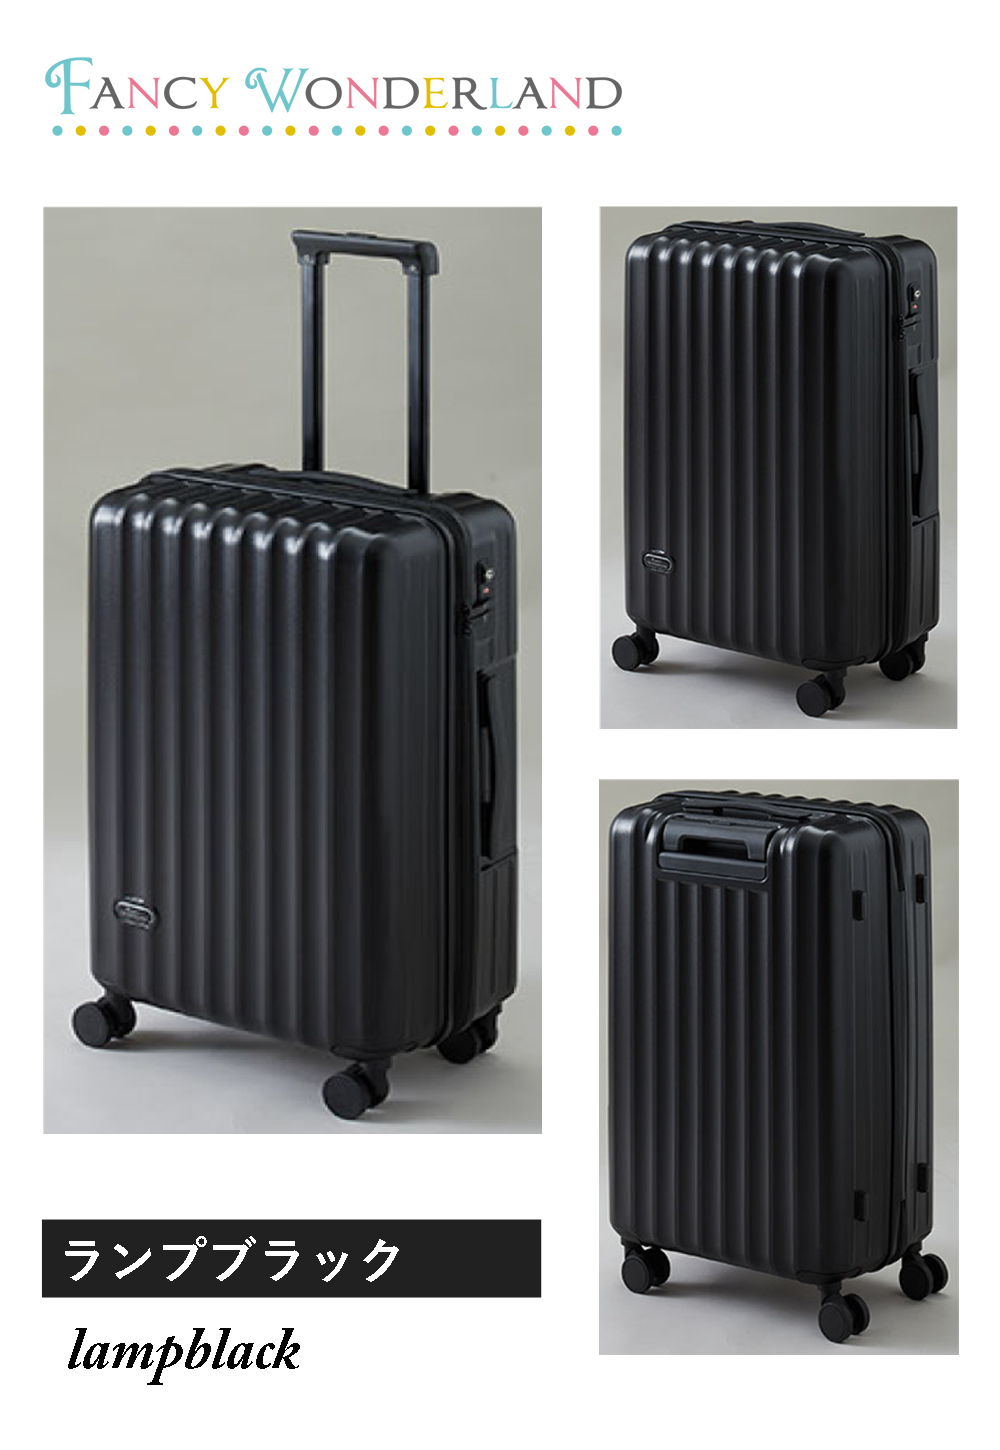 キャリーバッグ スーツケース キャリーケース lサイズ l ハード ty2301-l ファスナー おしゃれ かわいい 7泊 10泊 軽量 海外旅行  tsa fancywonderland